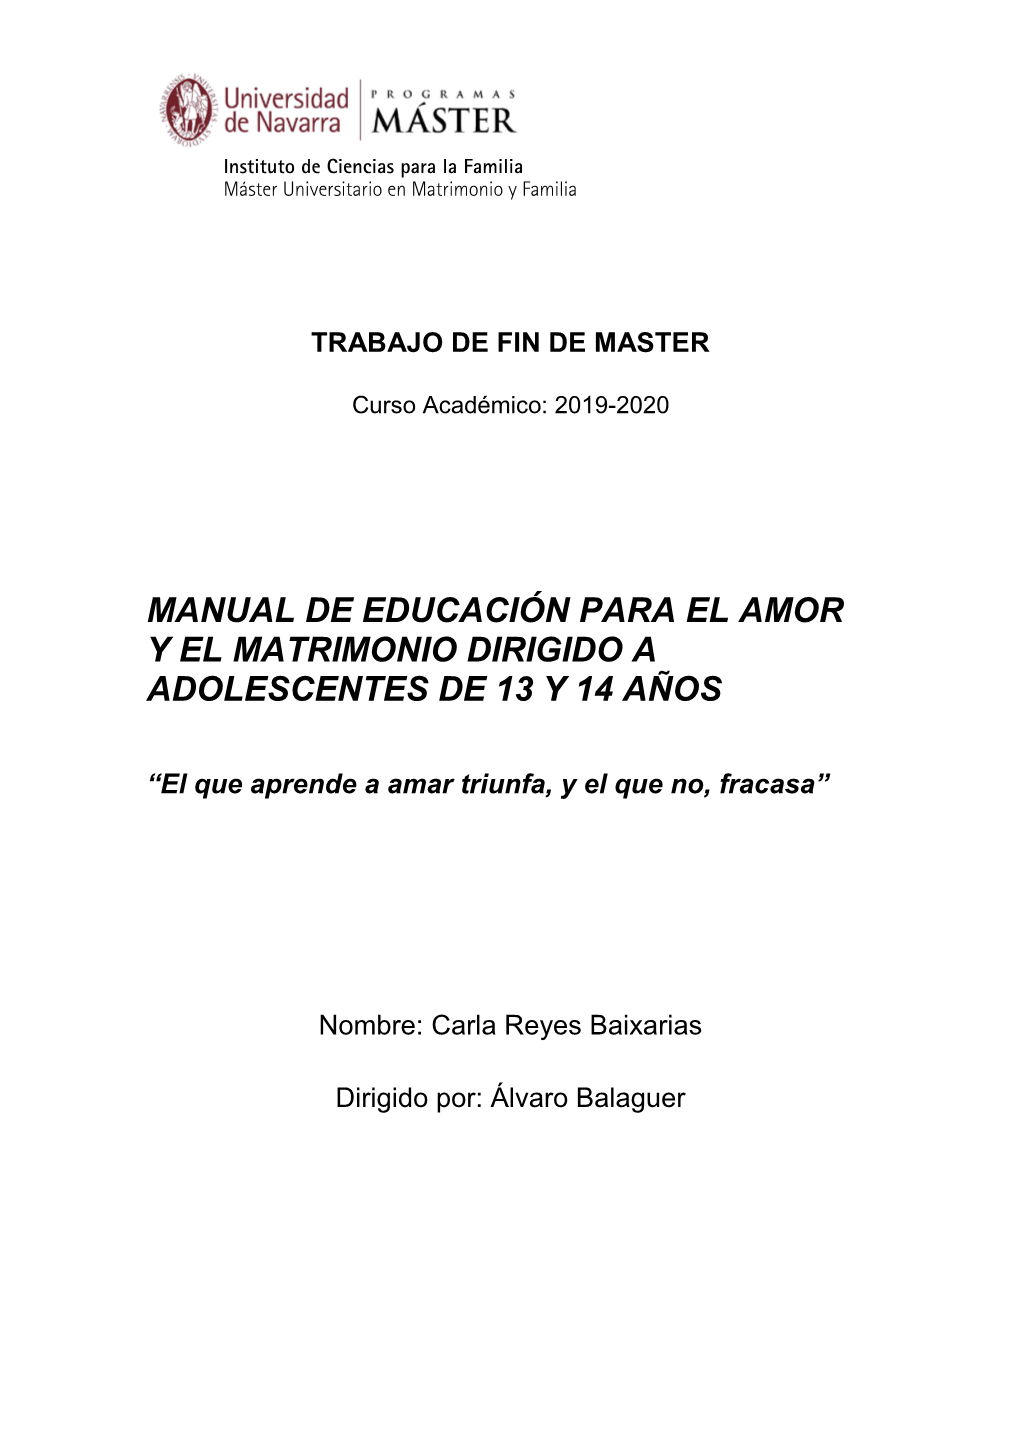 Manual De Educación Para El Amor Y El Matrimonio Dirigido a Adolescentes De 13 Y 14 Años